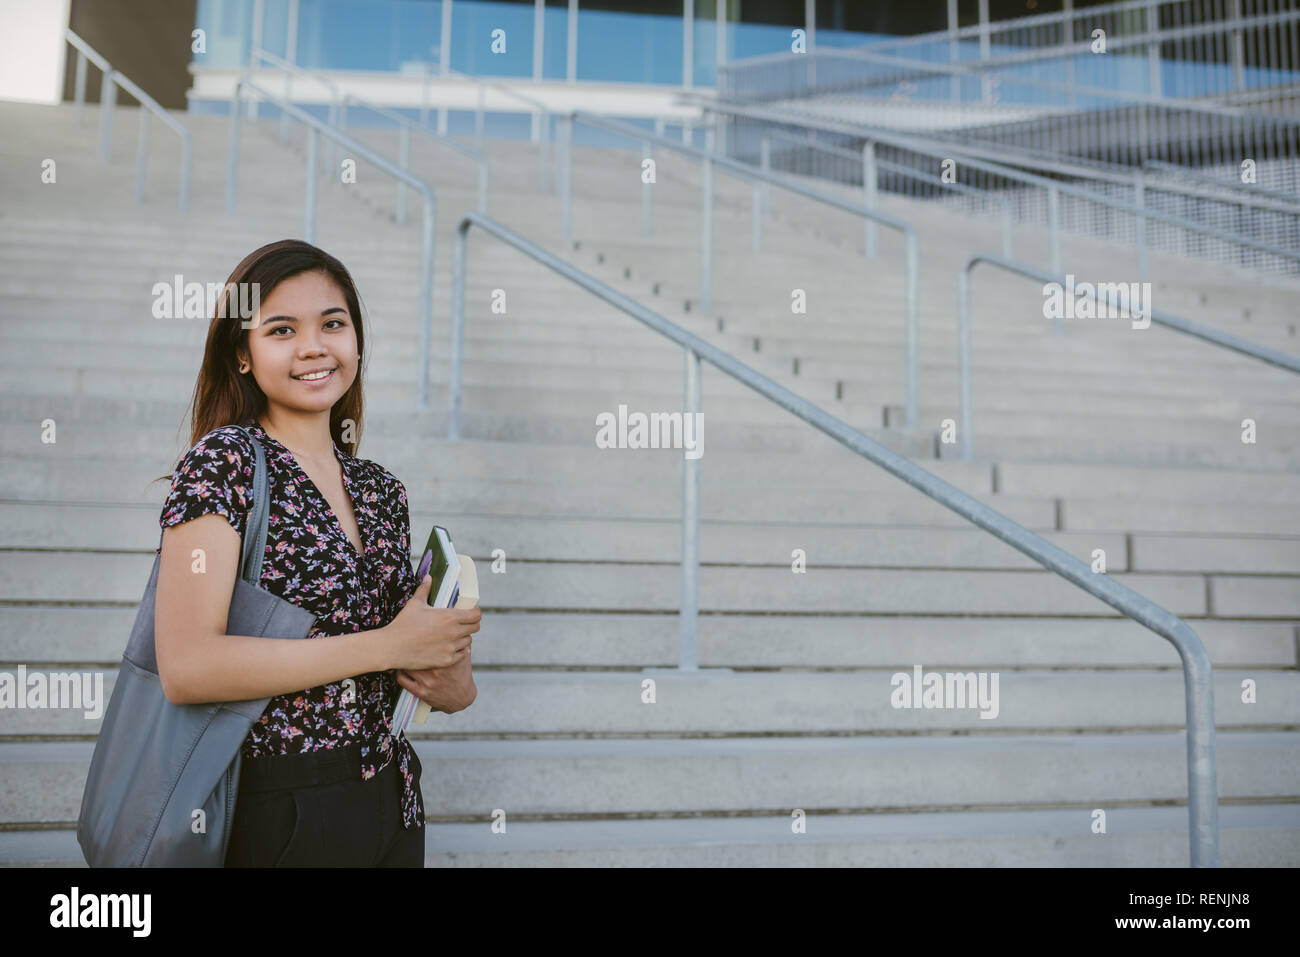 Lächelnden jungen asiatischen Studenten durch Campus Schritte stehen Stockfoto